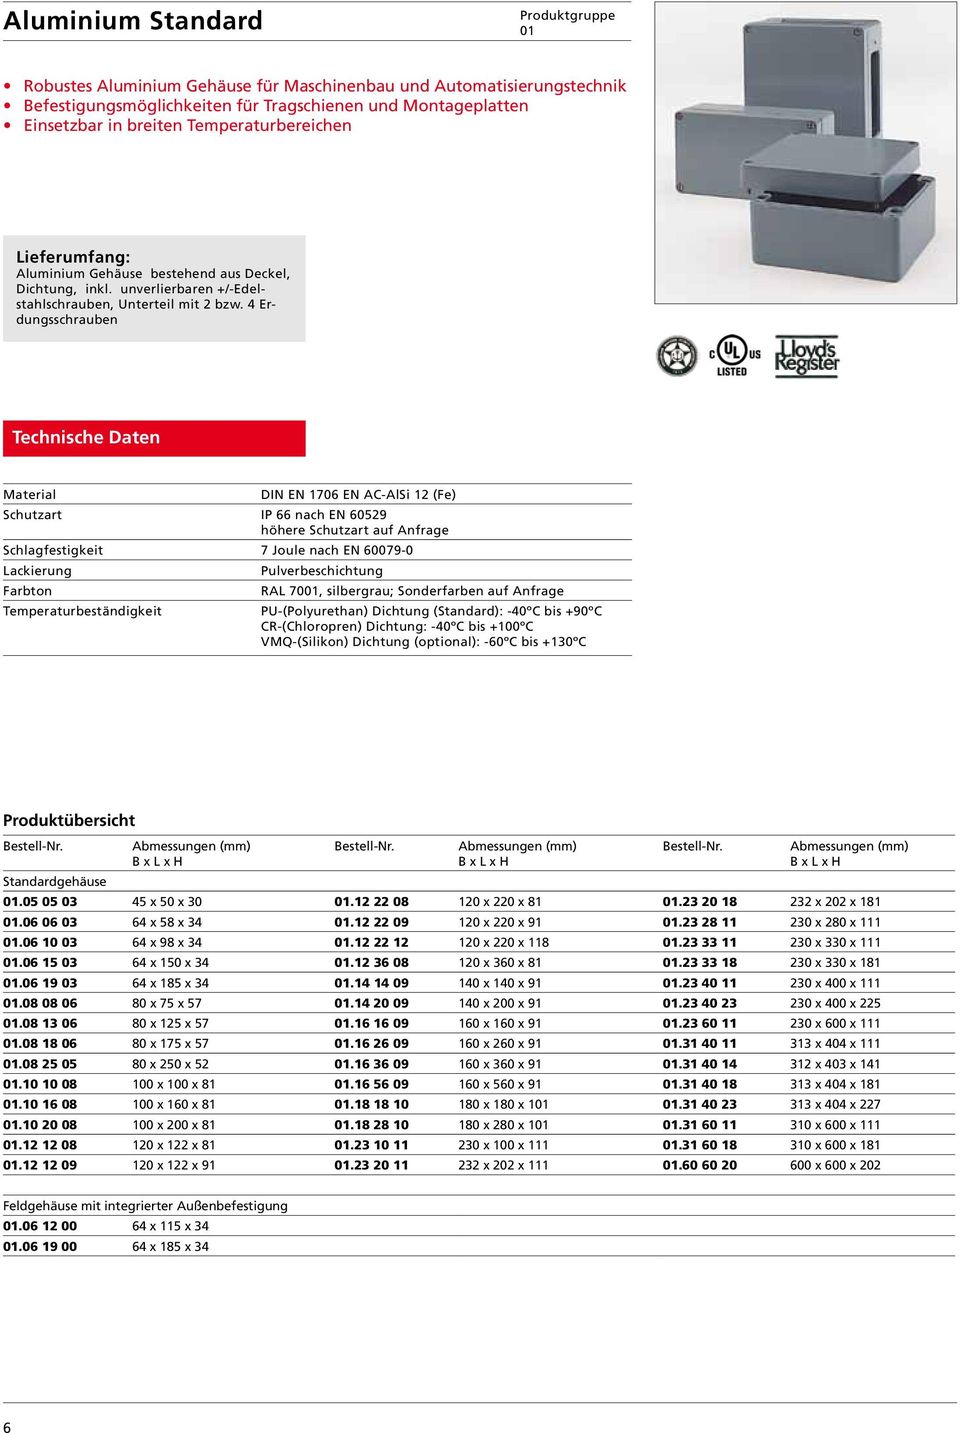 4 Erdungsschrauben Material DIN EN 1706 EN AC-AlSi 12 (Fe) Schutzart IP 66 nach EN 60529 höhere Schutzart auf Anfrage Schlagfestigkeit 7 Joule nach EN 60079-0 Lackierung Pulverbeschichtung Farbton